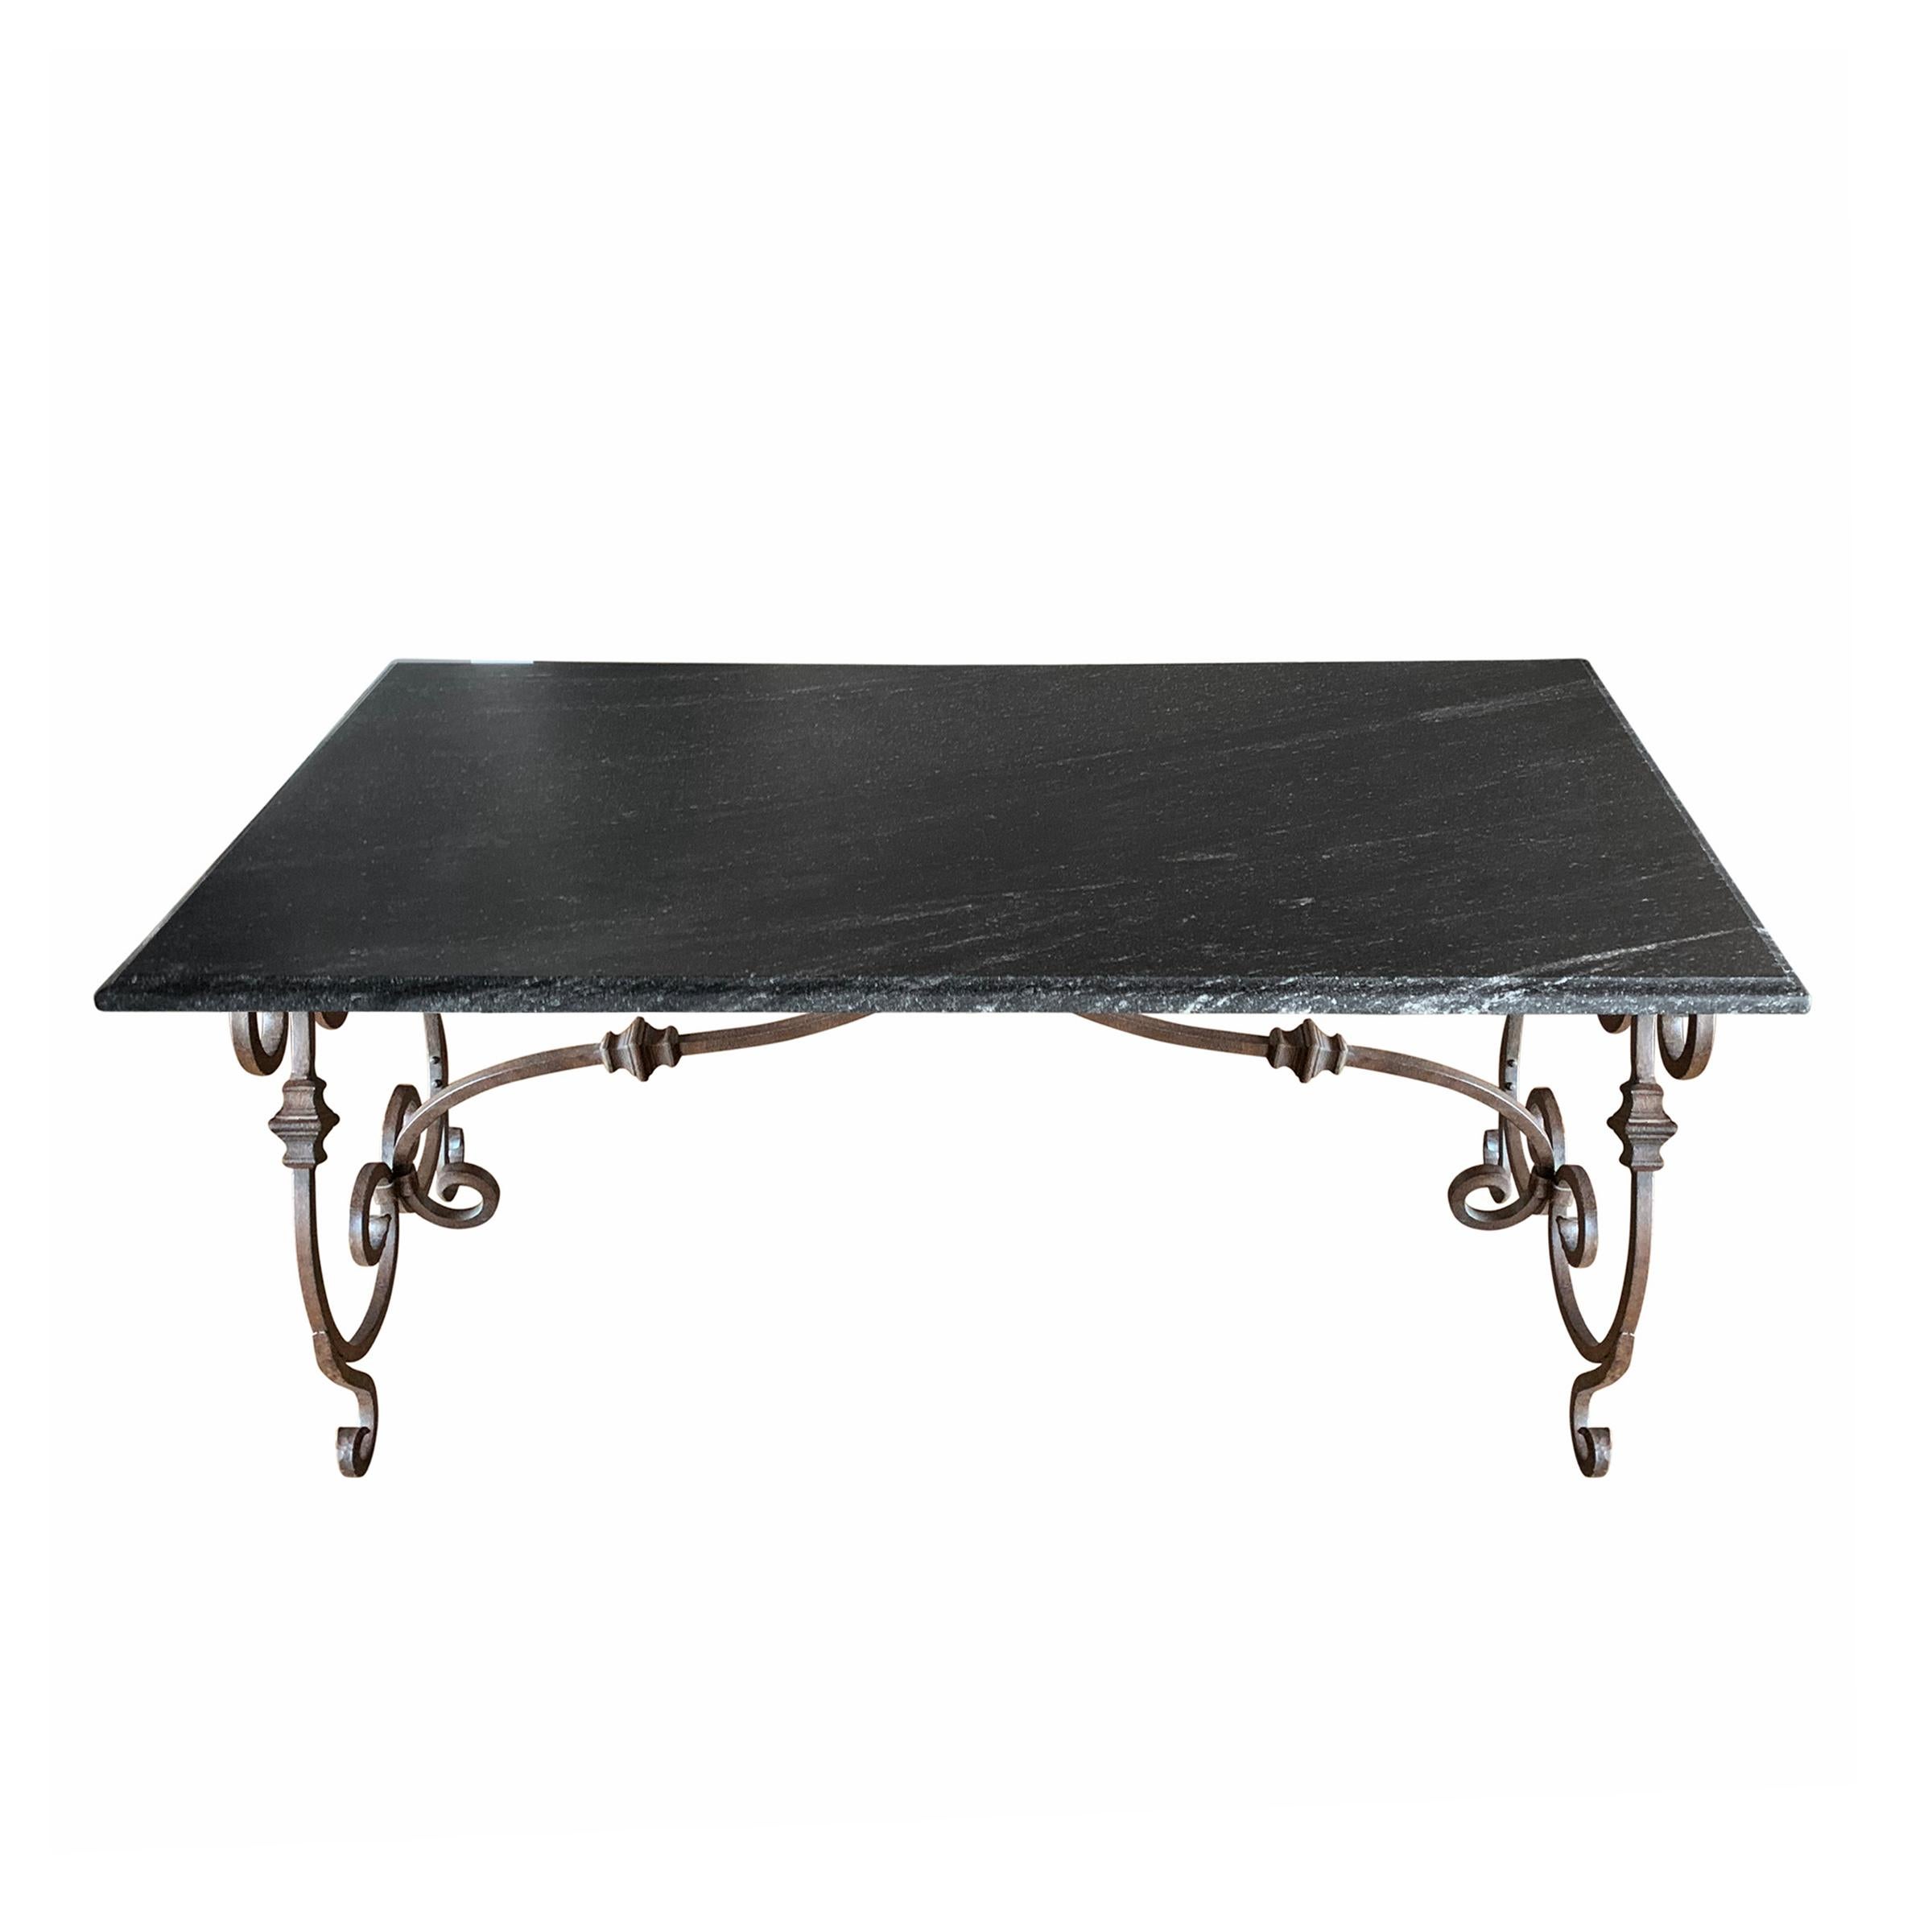 Une belle table italienne de la fin du 20e siècle, avec une base en fer forgé à volutes et un plateau en granit noir avec un bord en ogive. La table est à la hauteur parfaite d'un bureau, d'une table de travail ou d'une table à manger, mais elle